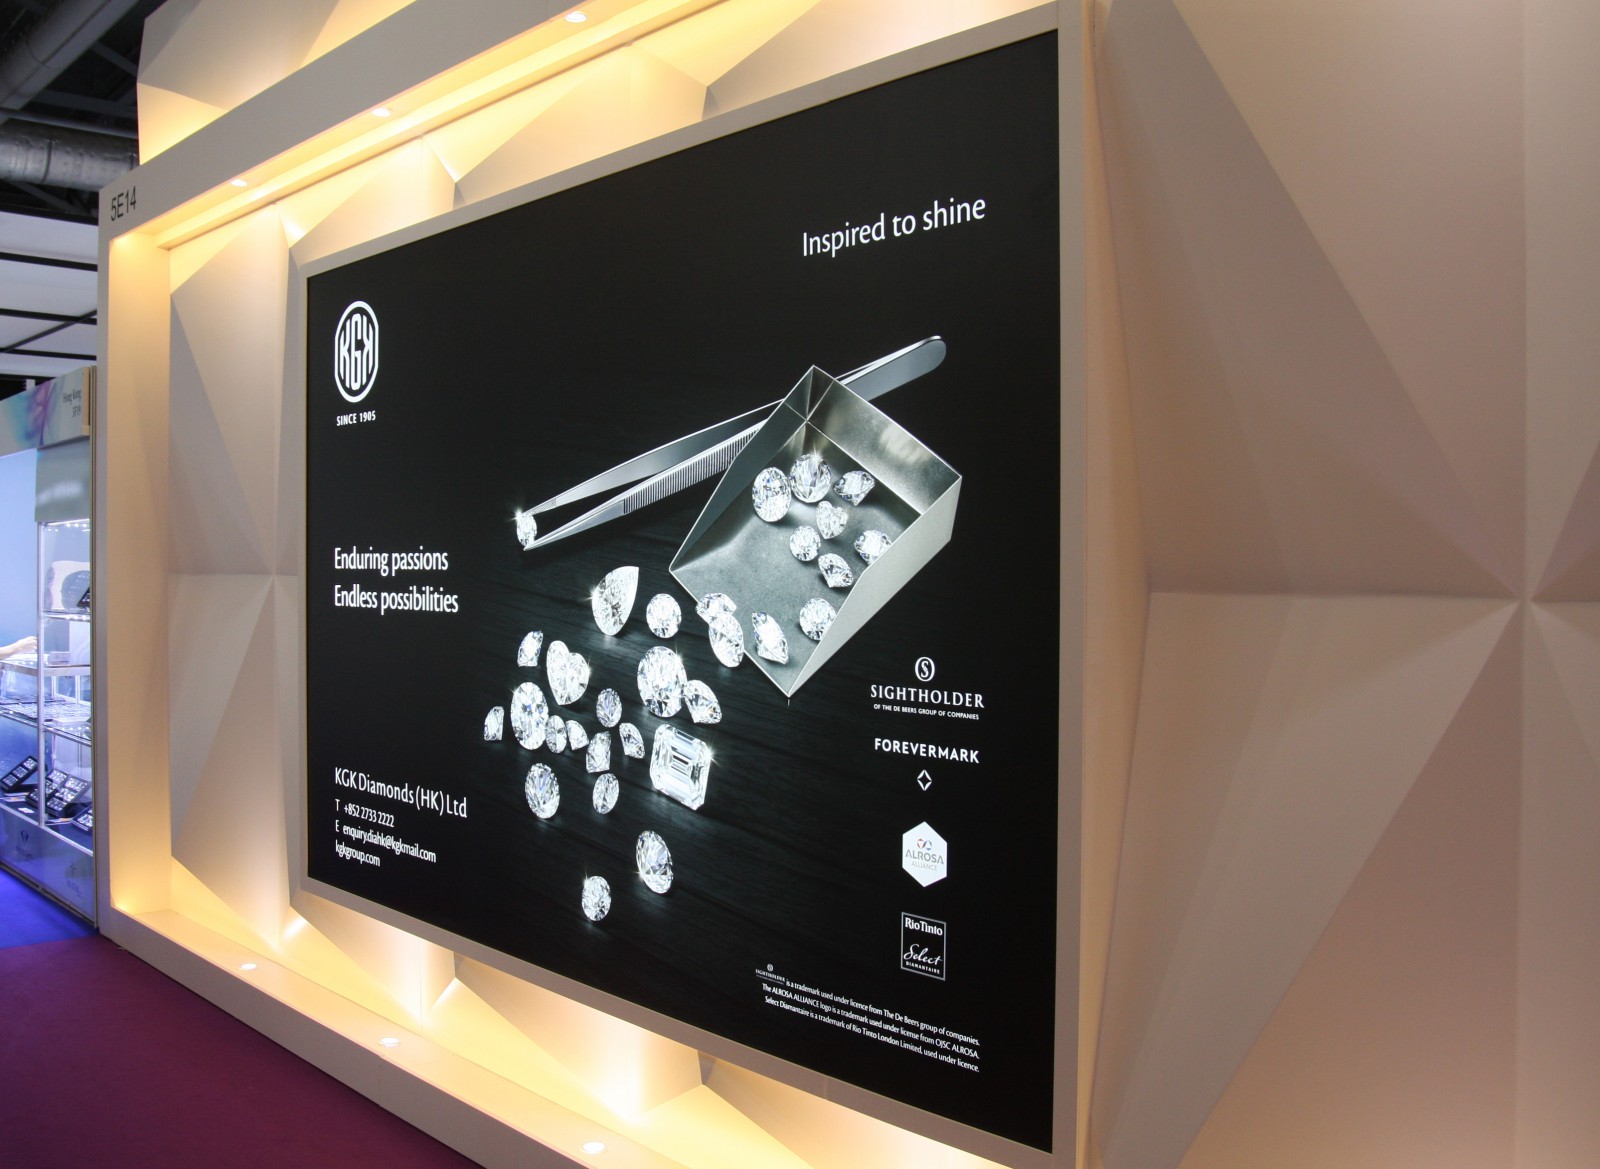 KGK Diamonds booth at Asiaworld - Expo Hong Kong Sep 2016